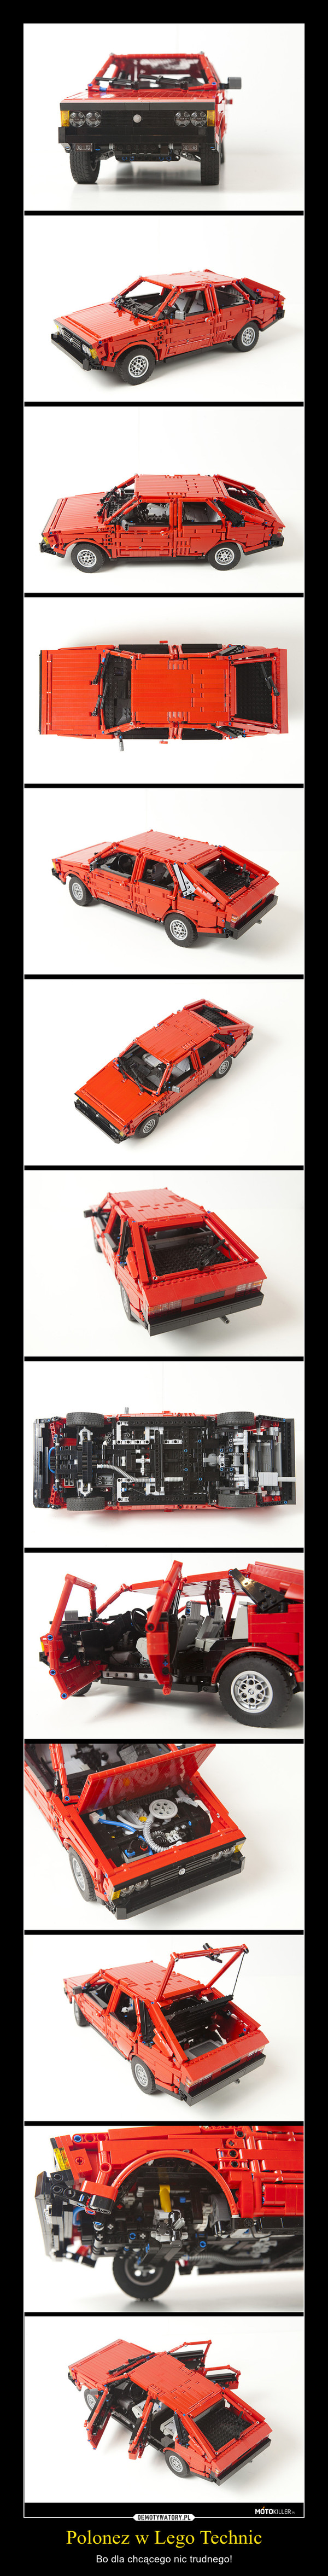 Polonez w Lego Technic